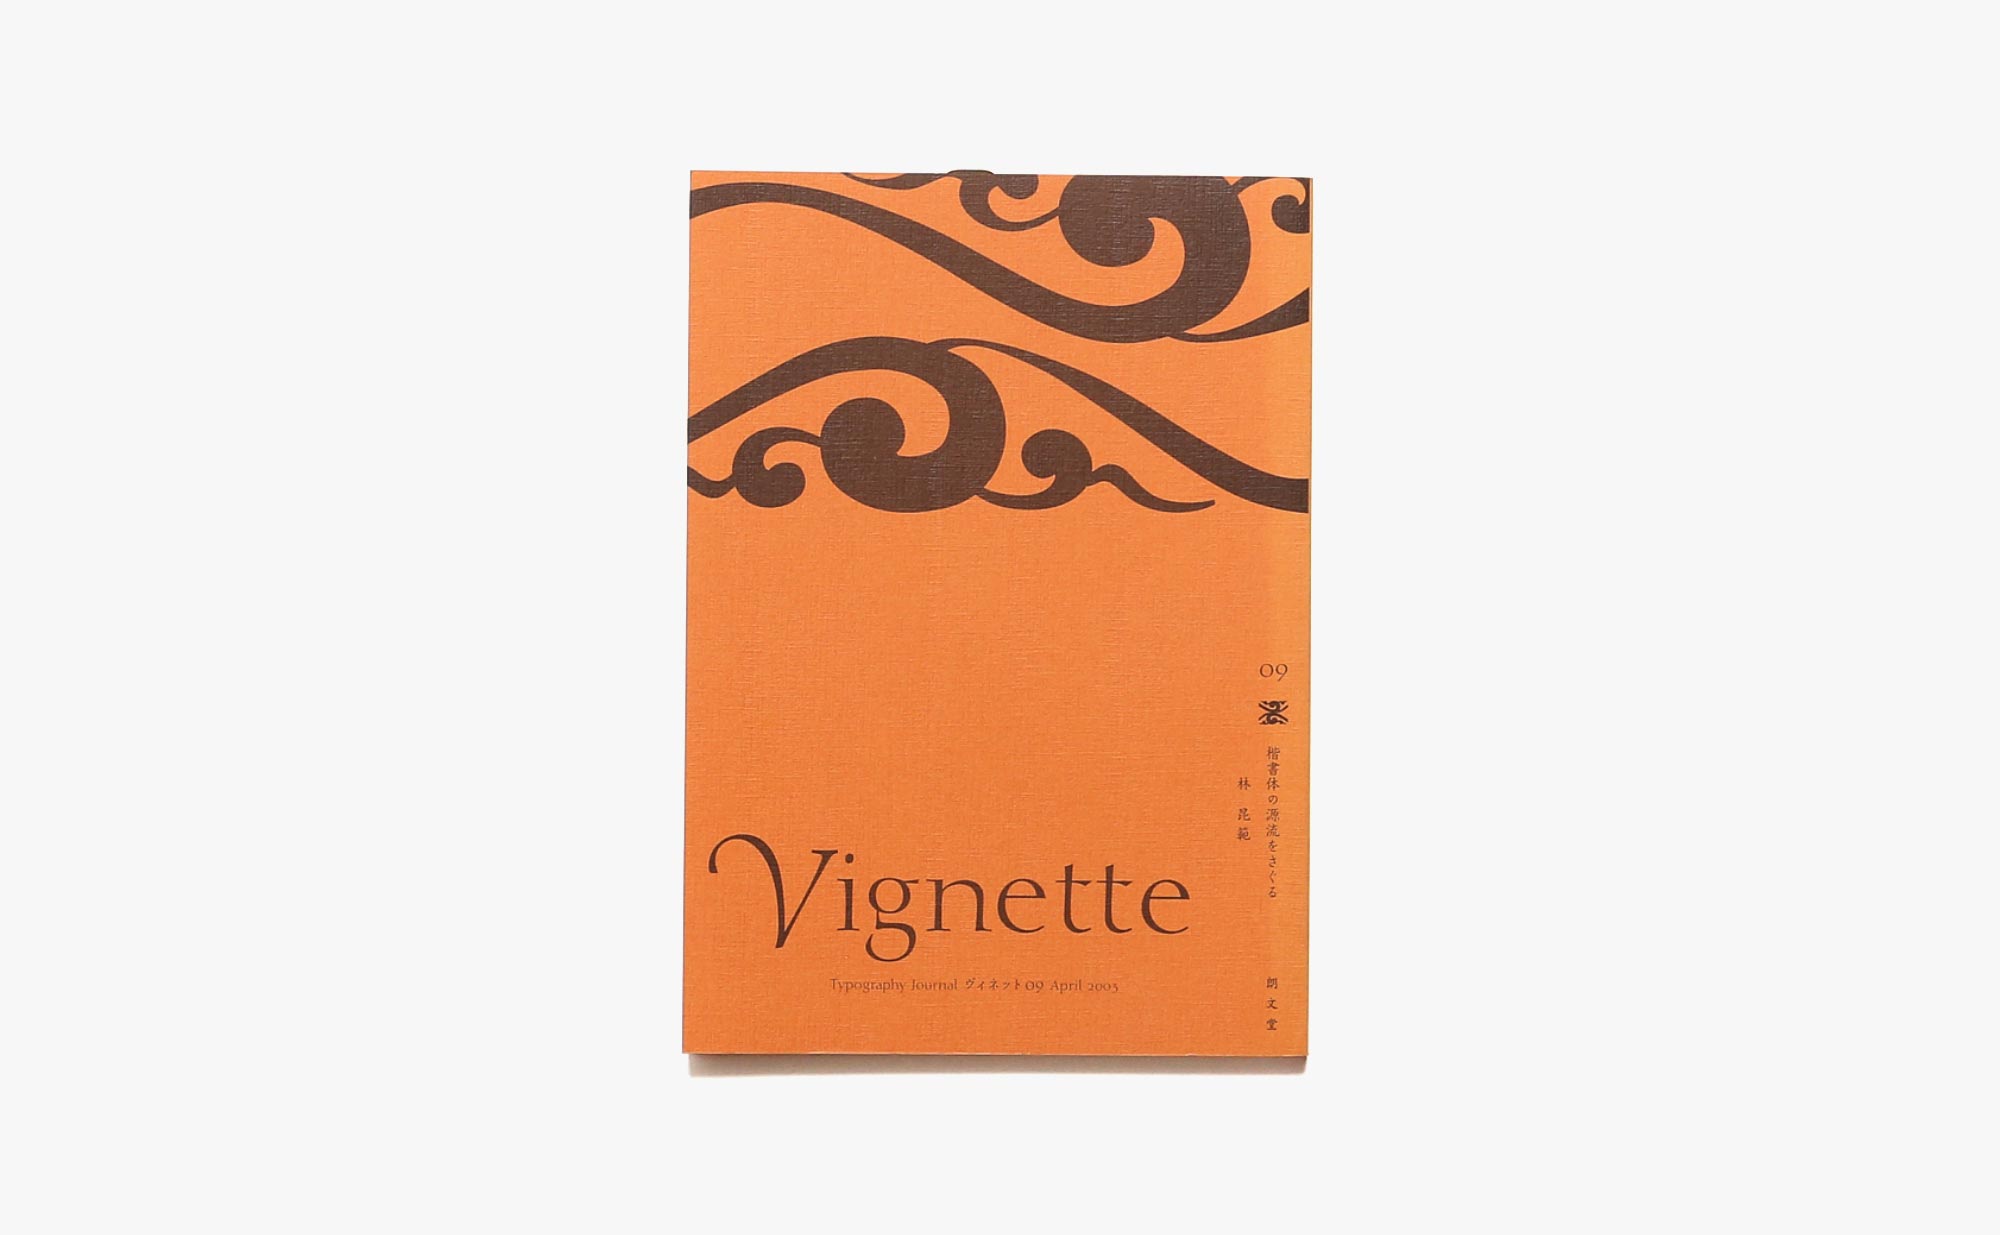 Vignette Typography Journal ヴィネット 9号 楷書体の源流をさぐる